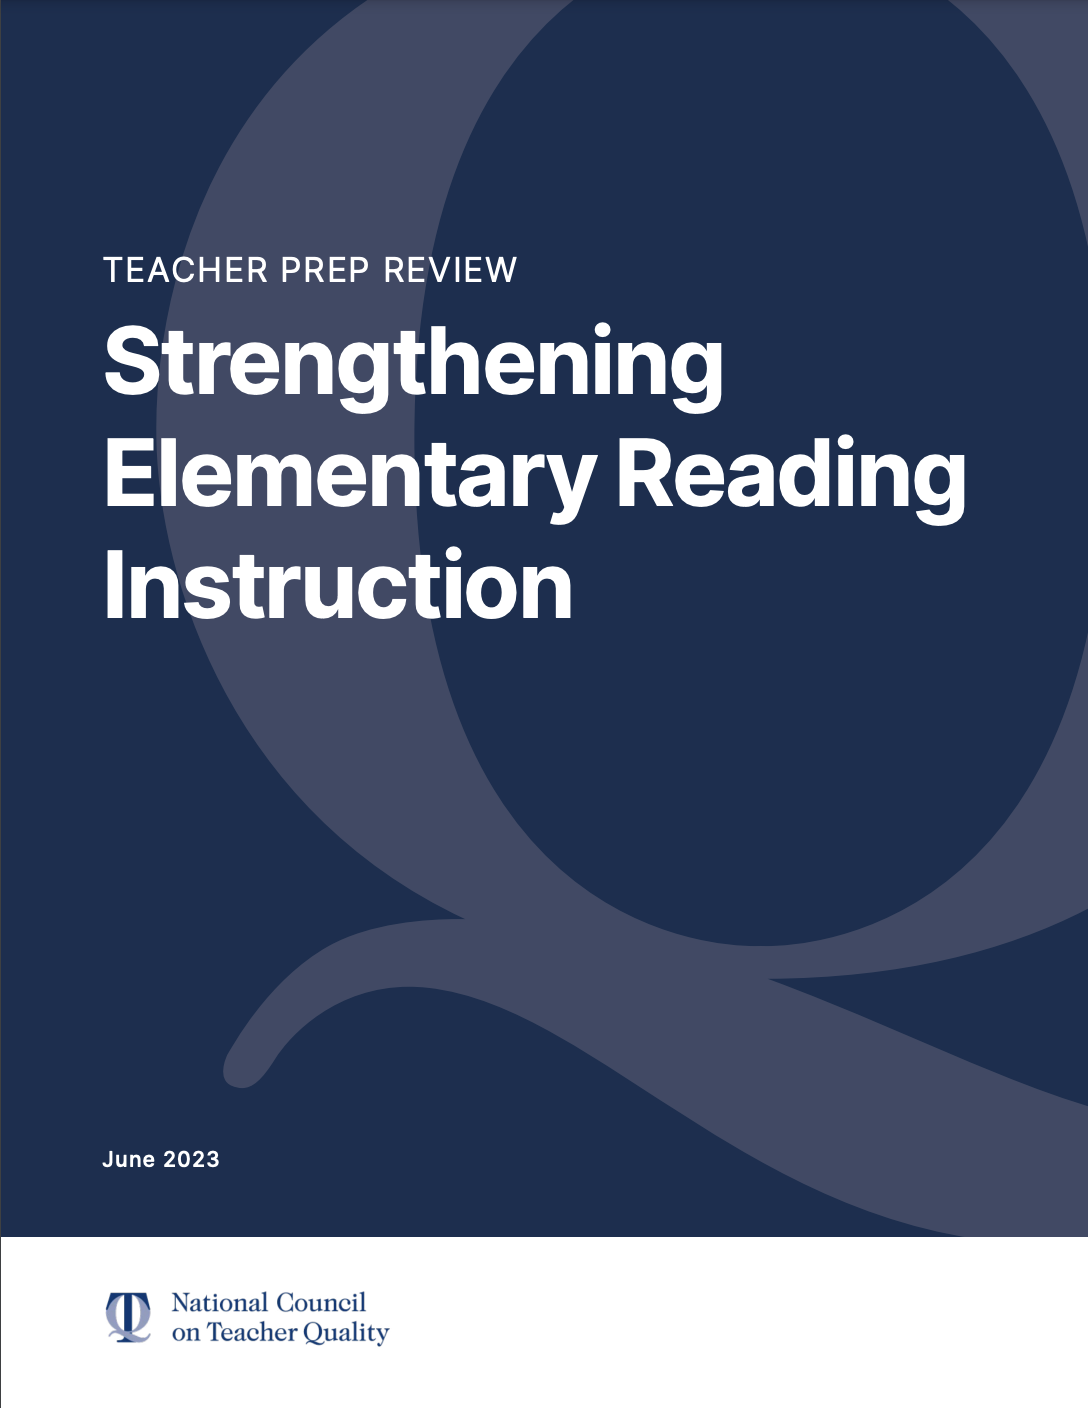 TEACHER PREP REVIEW: STRENGTHENING ELEMENTARY READING INSTRUCTION